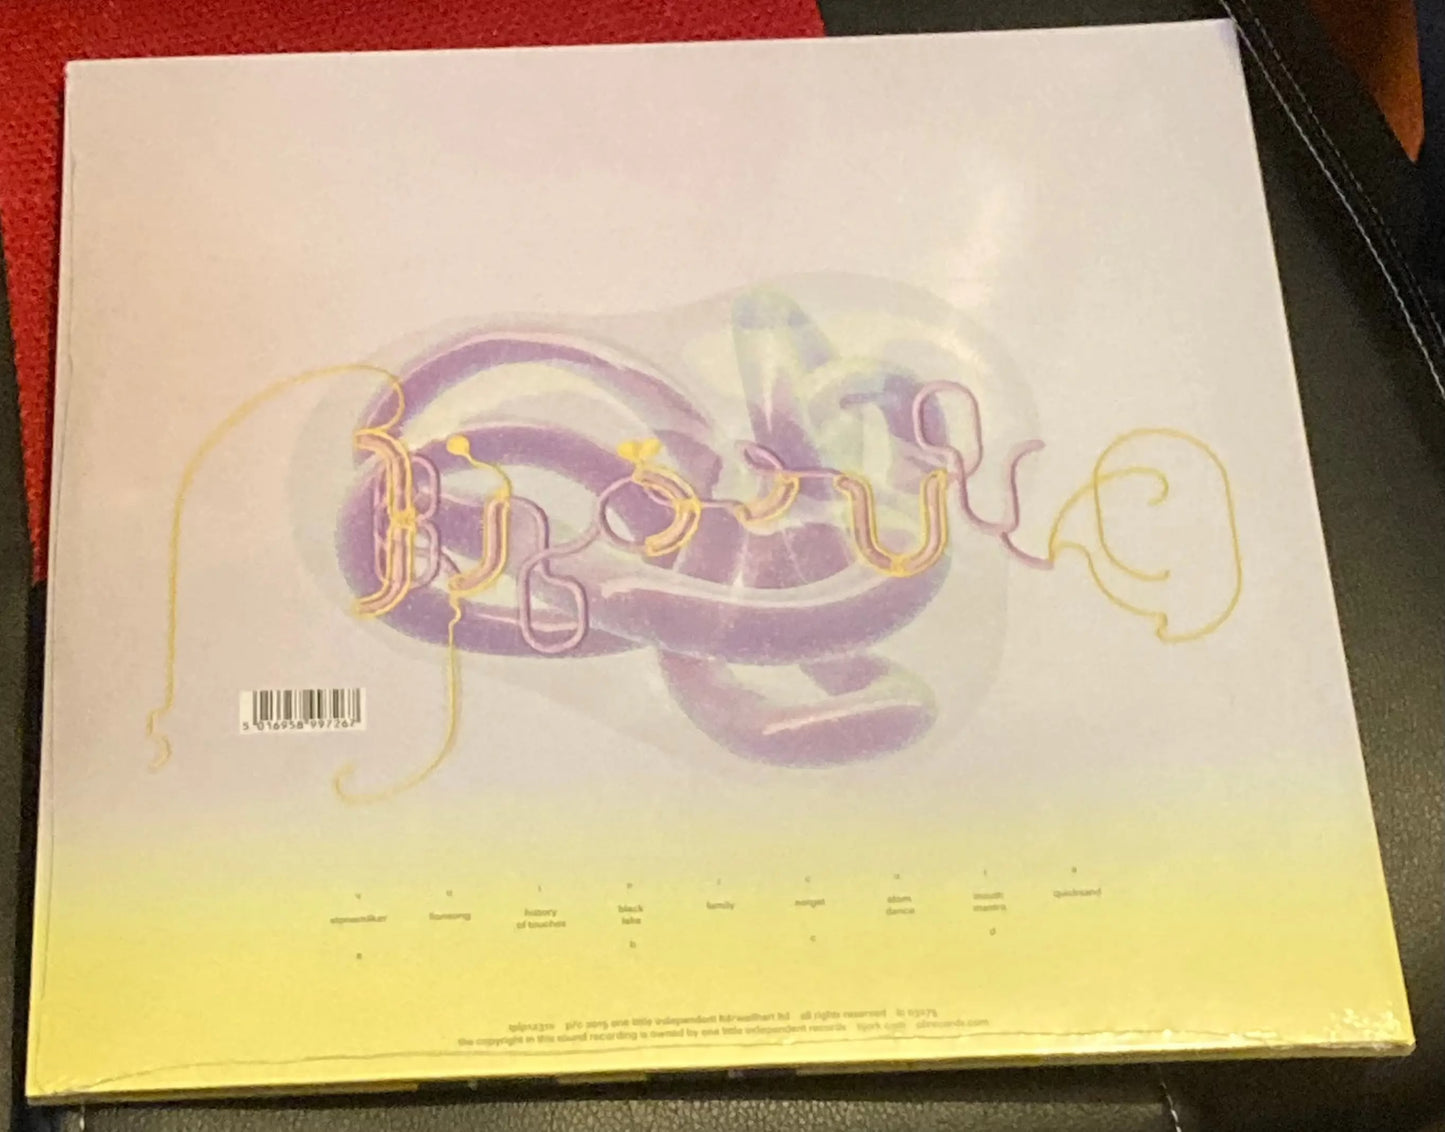 The back of Björk - Vulnicura on vinyl.